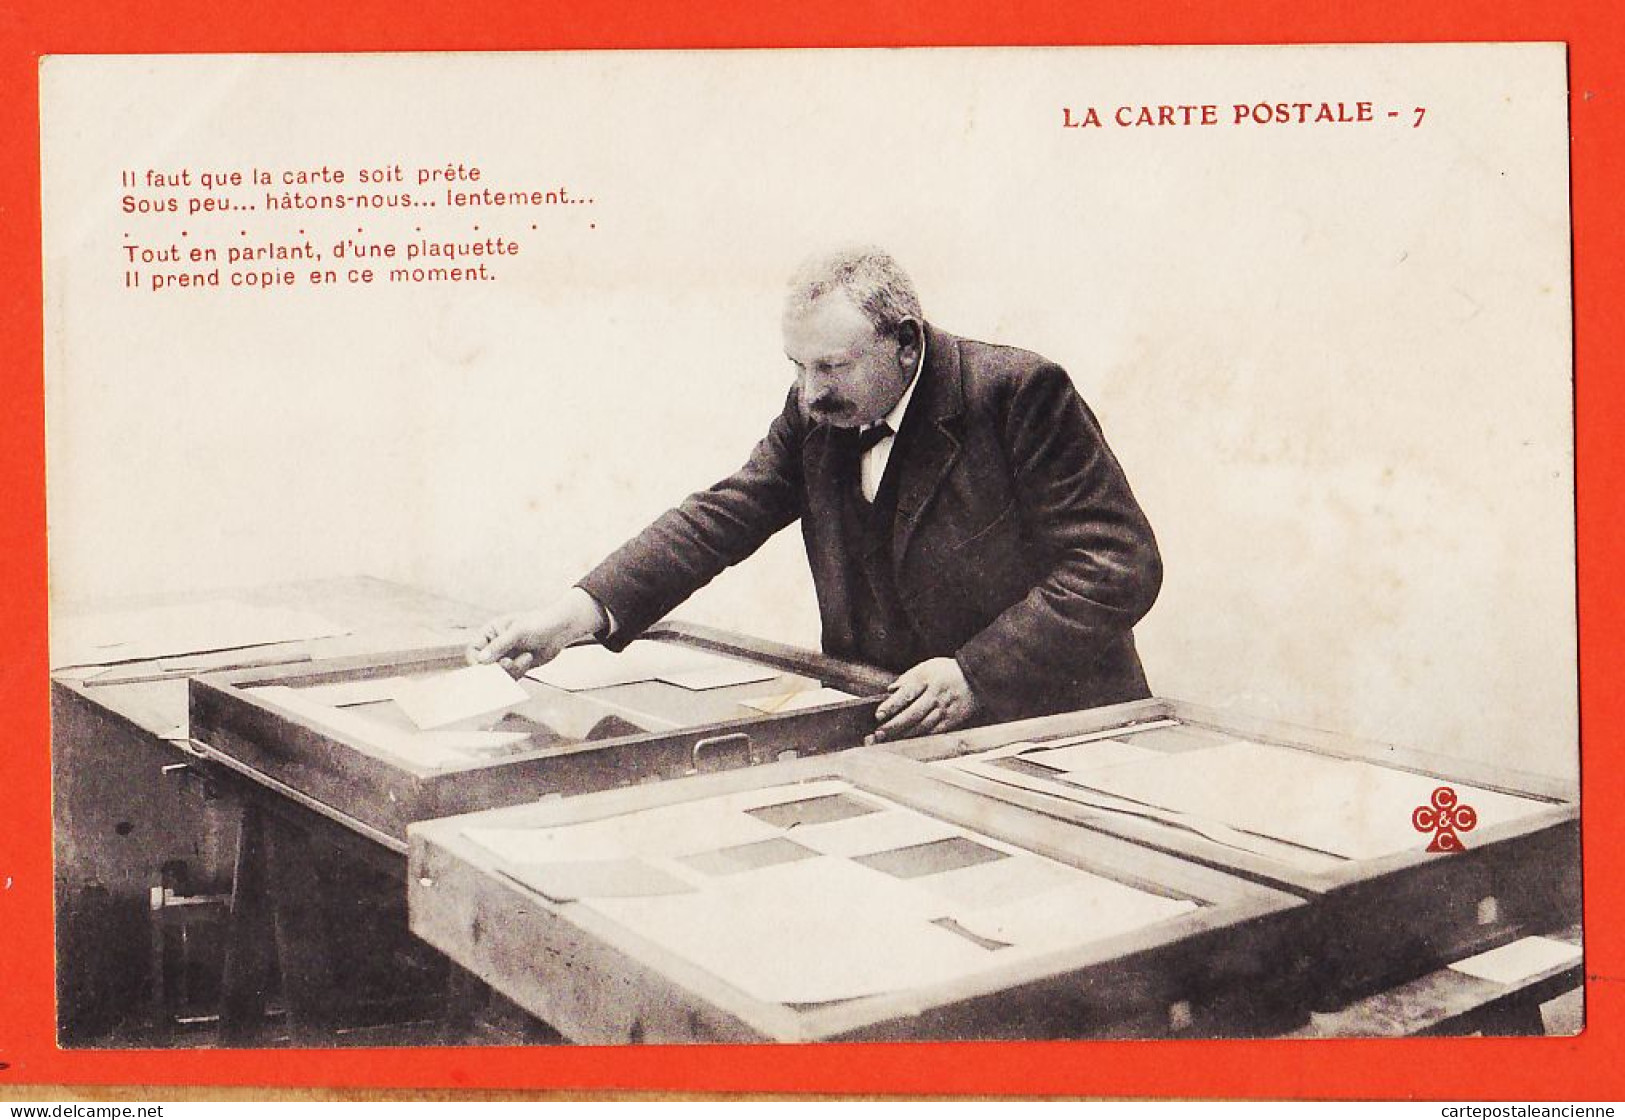 06288 / ♥️ ⭐ ◉  Métier Photographe Editeur LA CARTE POSTALE (7) Copie Plaquette Hâtons-Nous 1900s TREFLE CCCC C.C.C.C - Artisanat